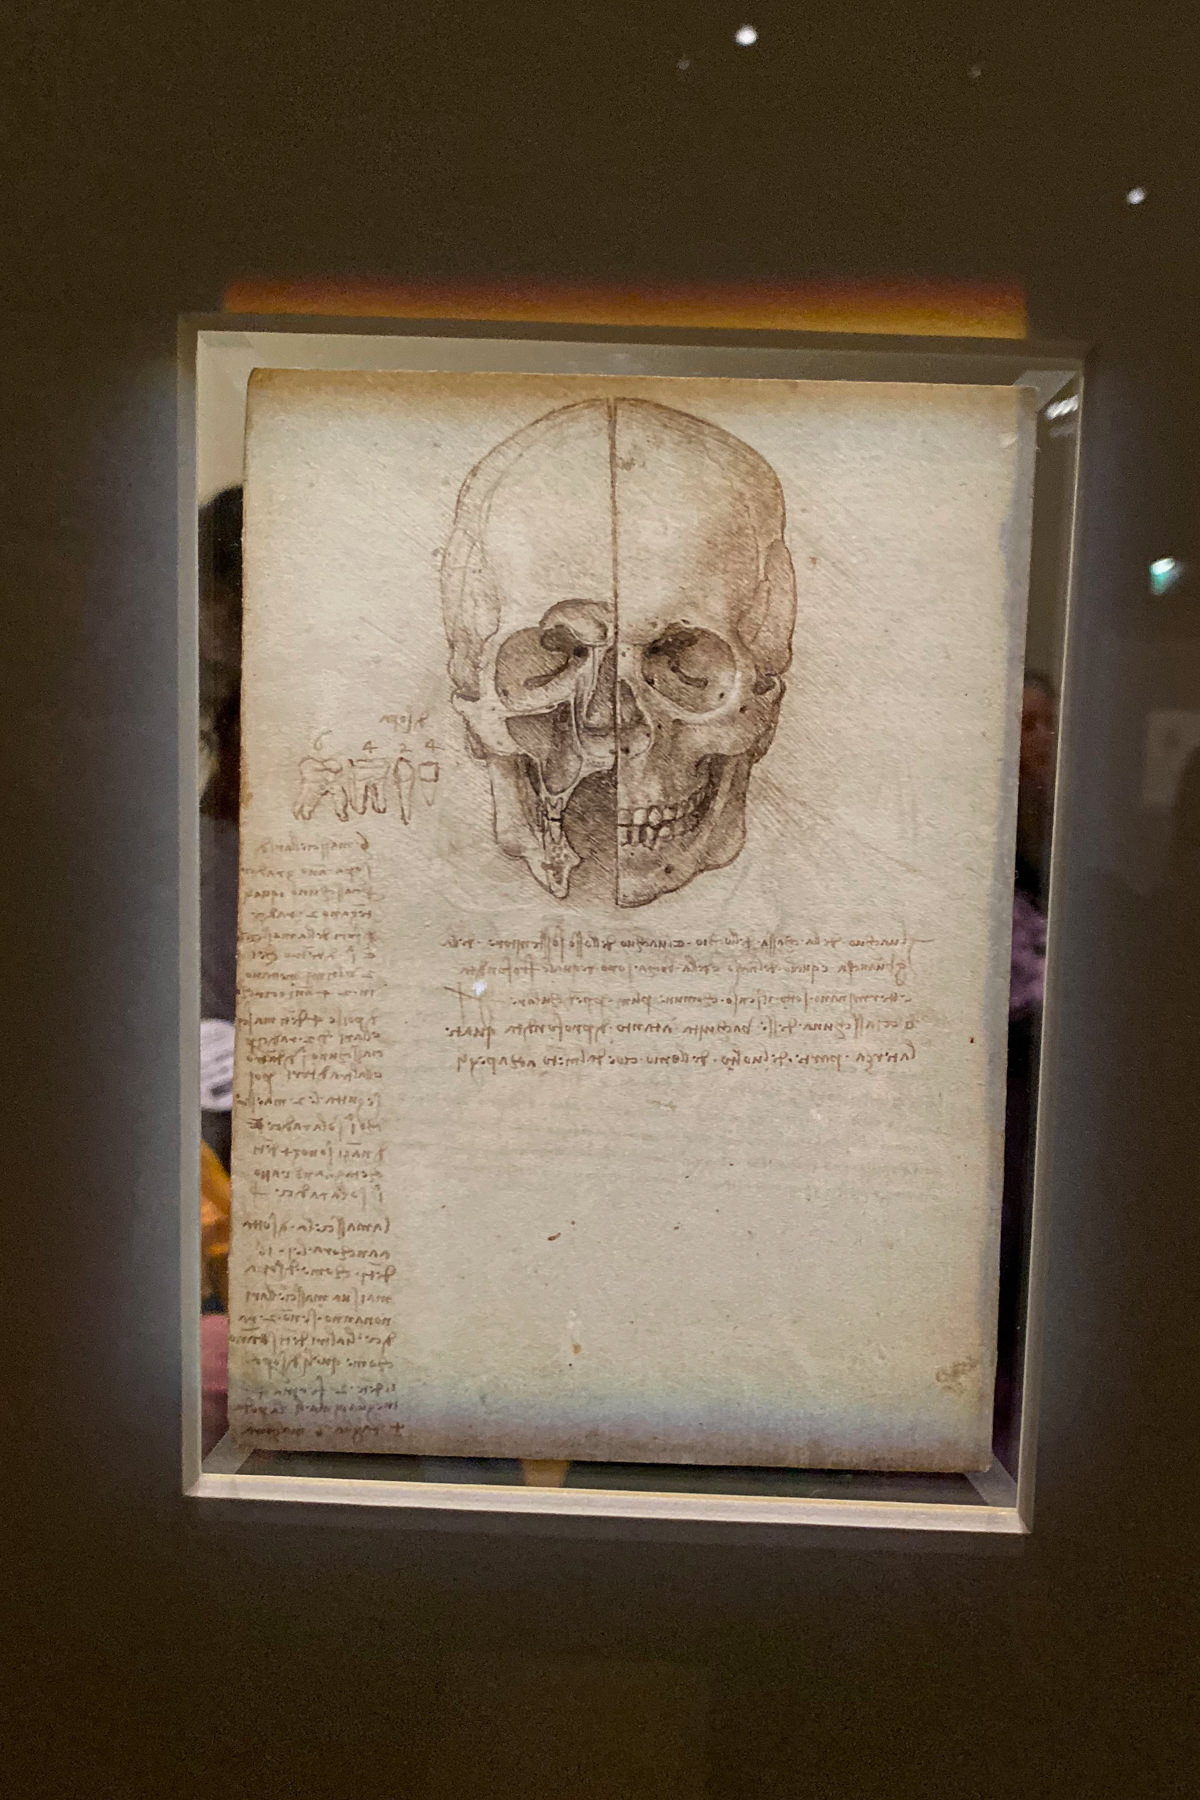 Leonardo da Vinci Exhibition in the Louvre Museum: The Skull